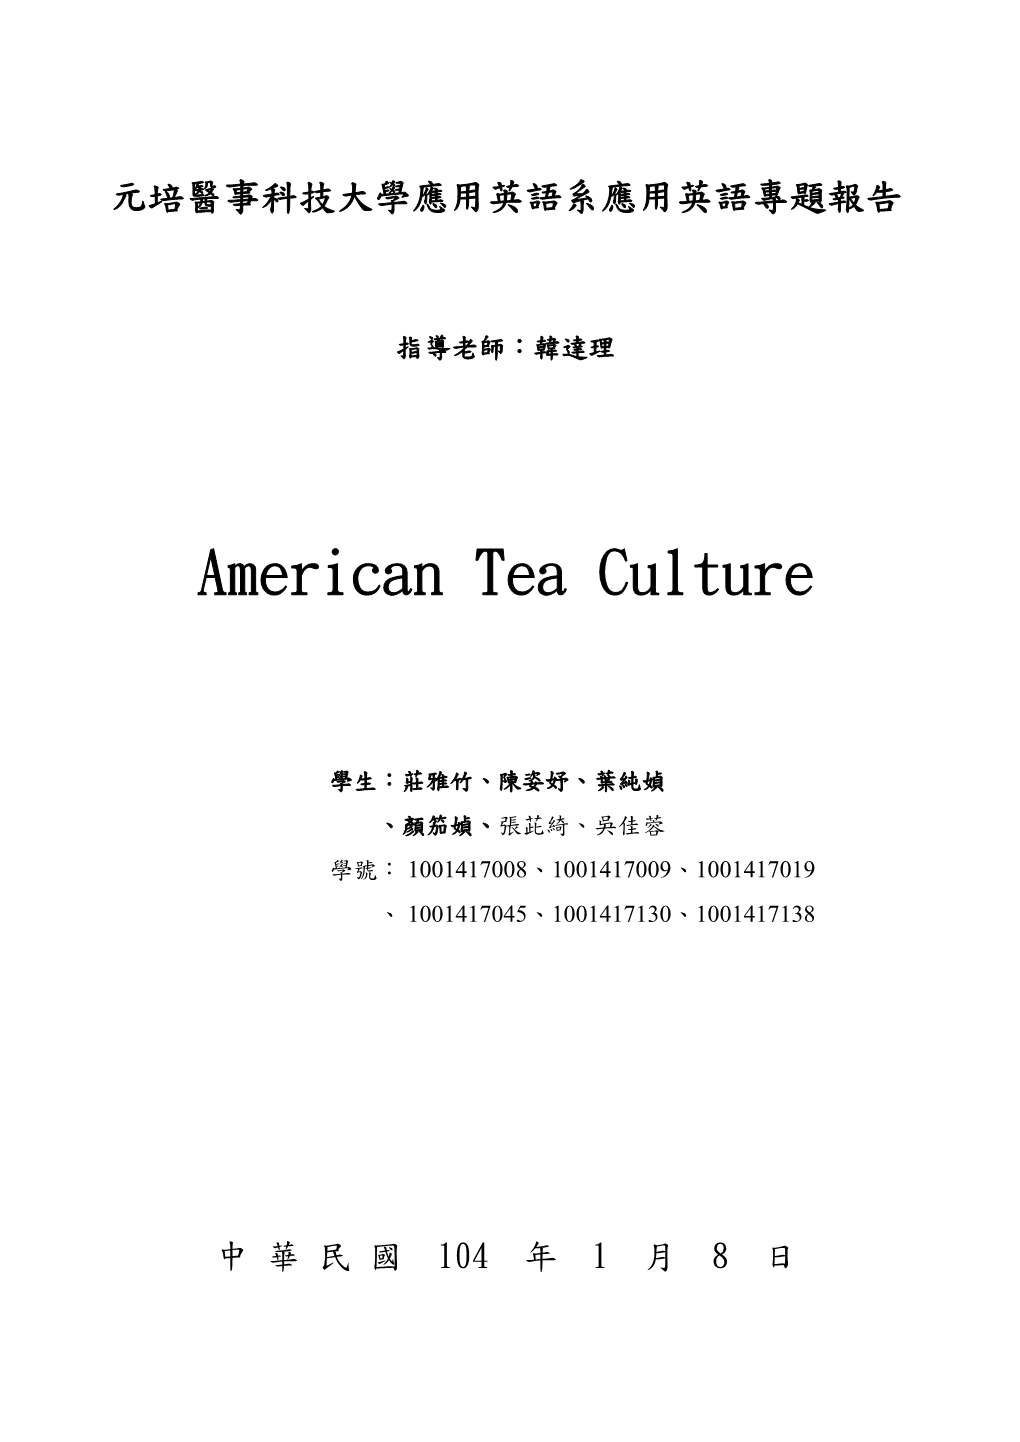 American Tea Culture(New)